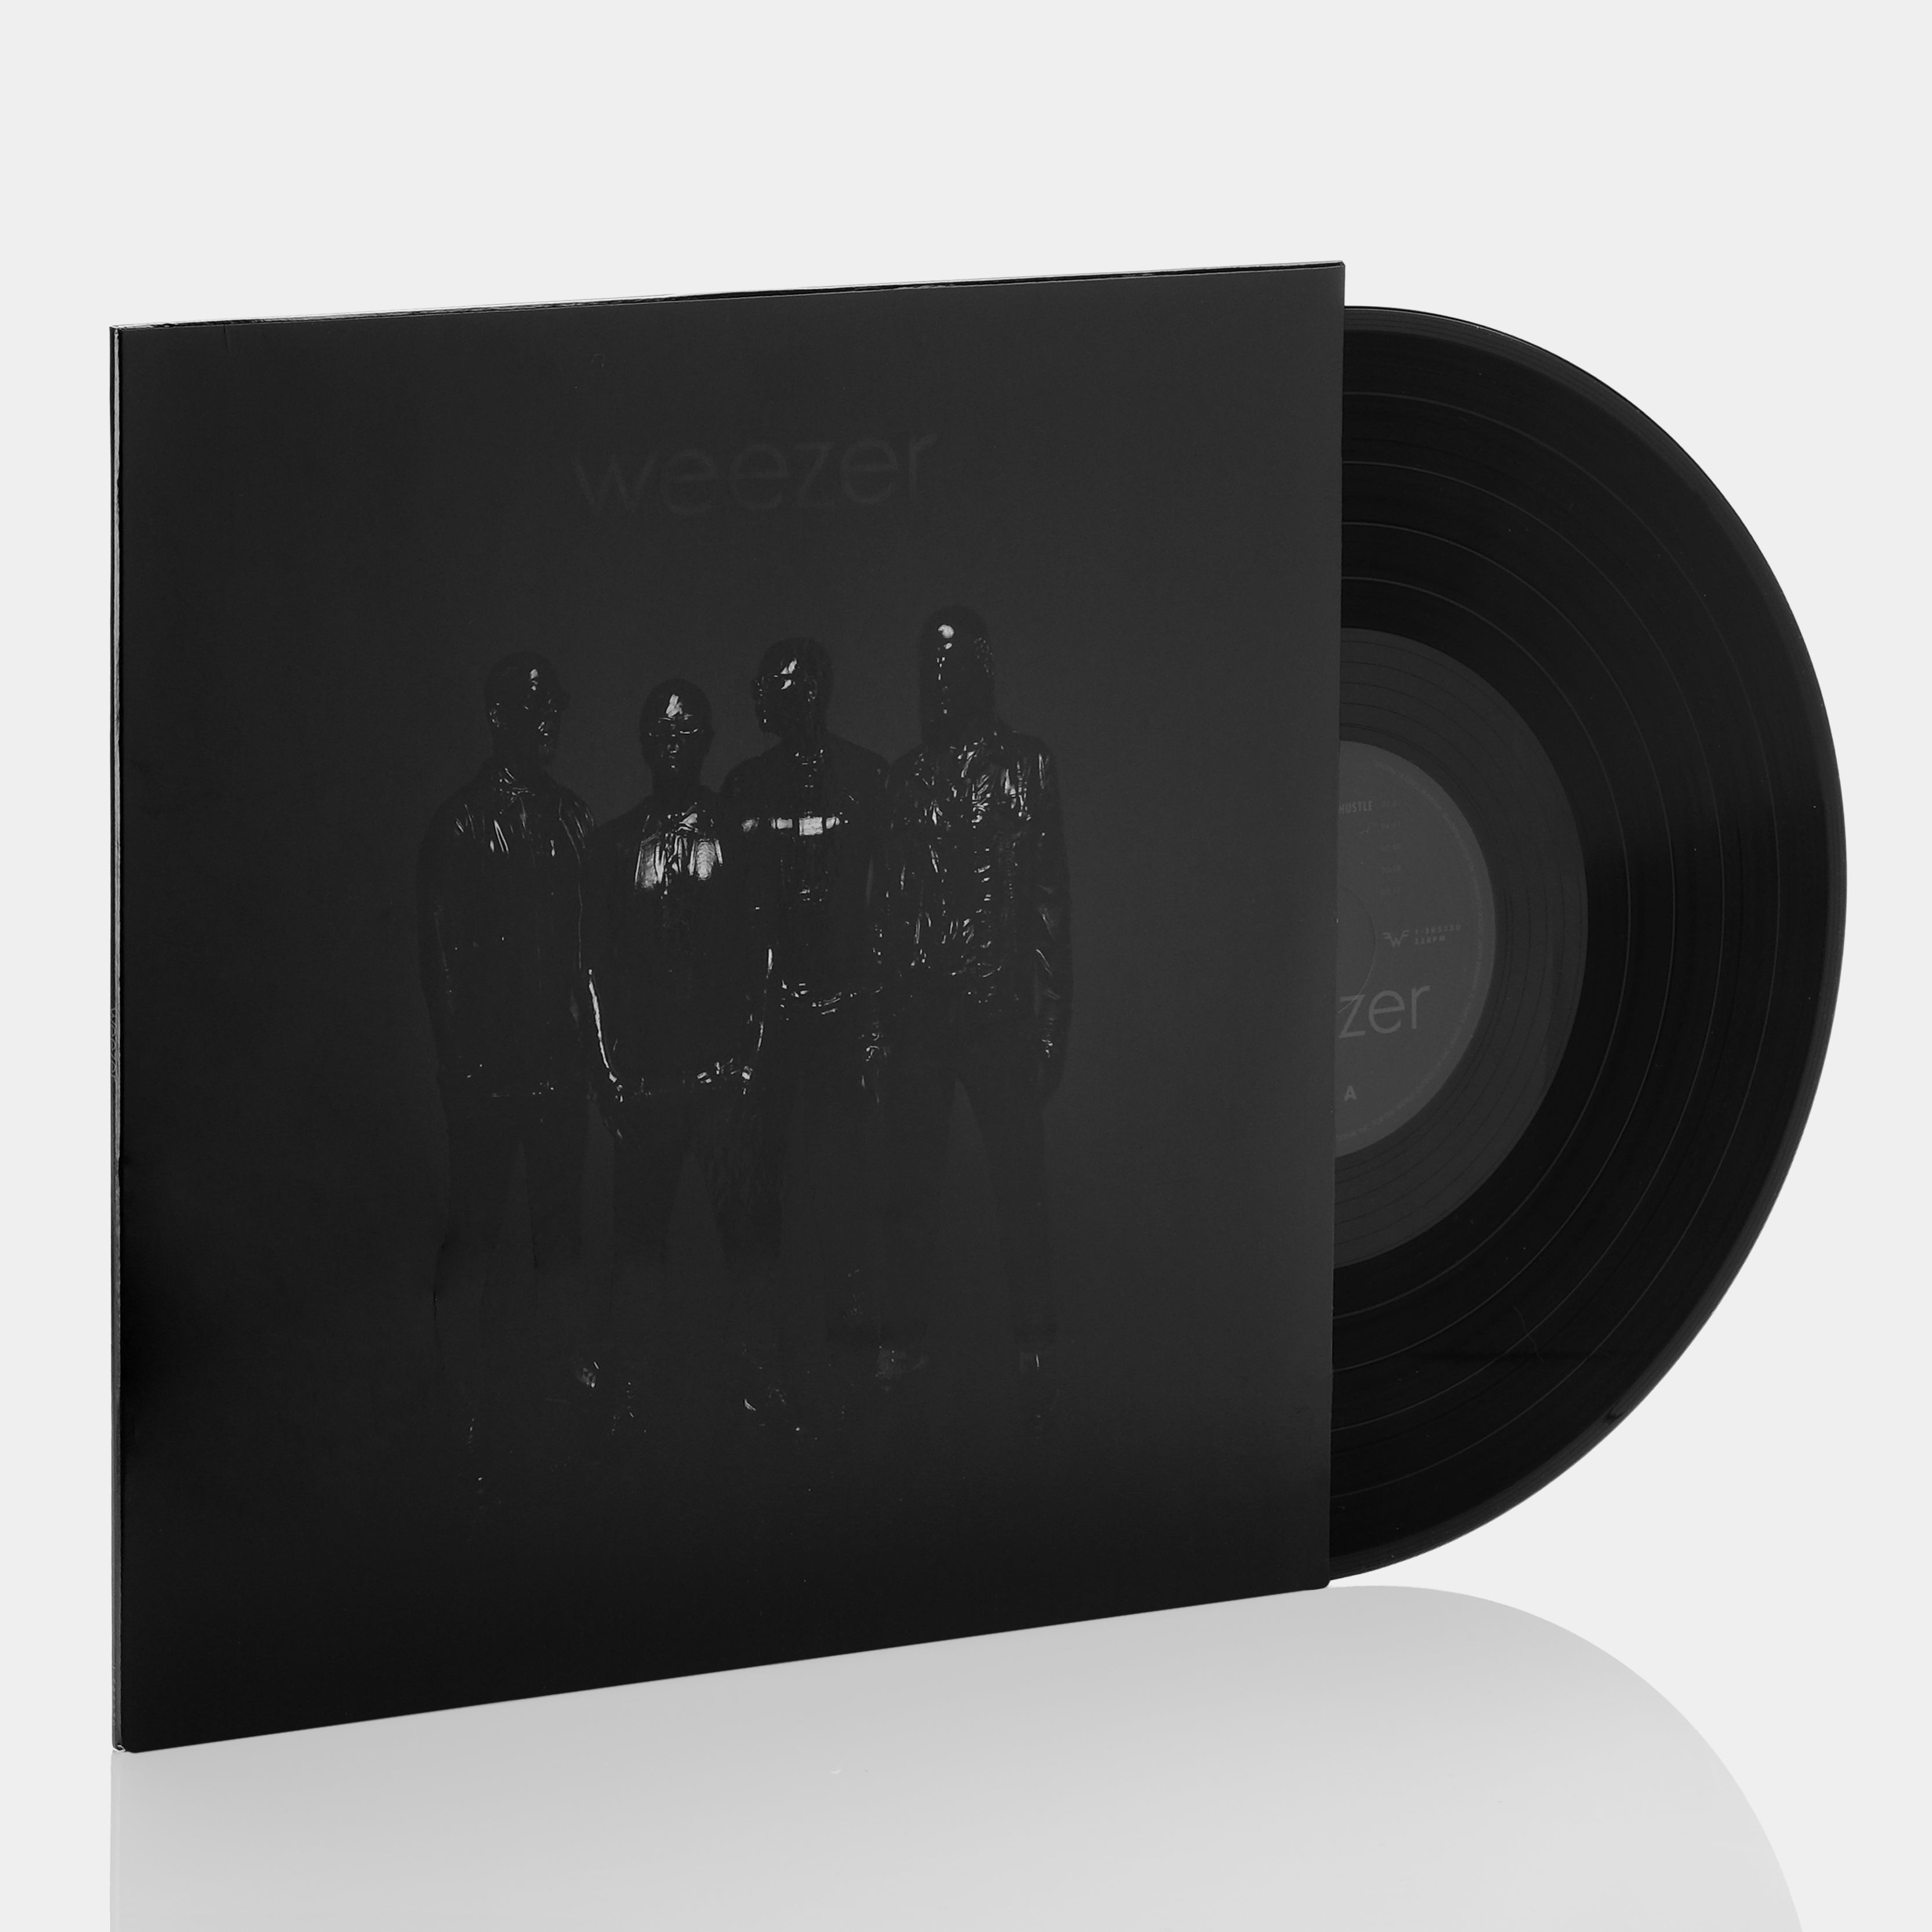 Weezer - Weezer (Black Album) LP Vinyl Record